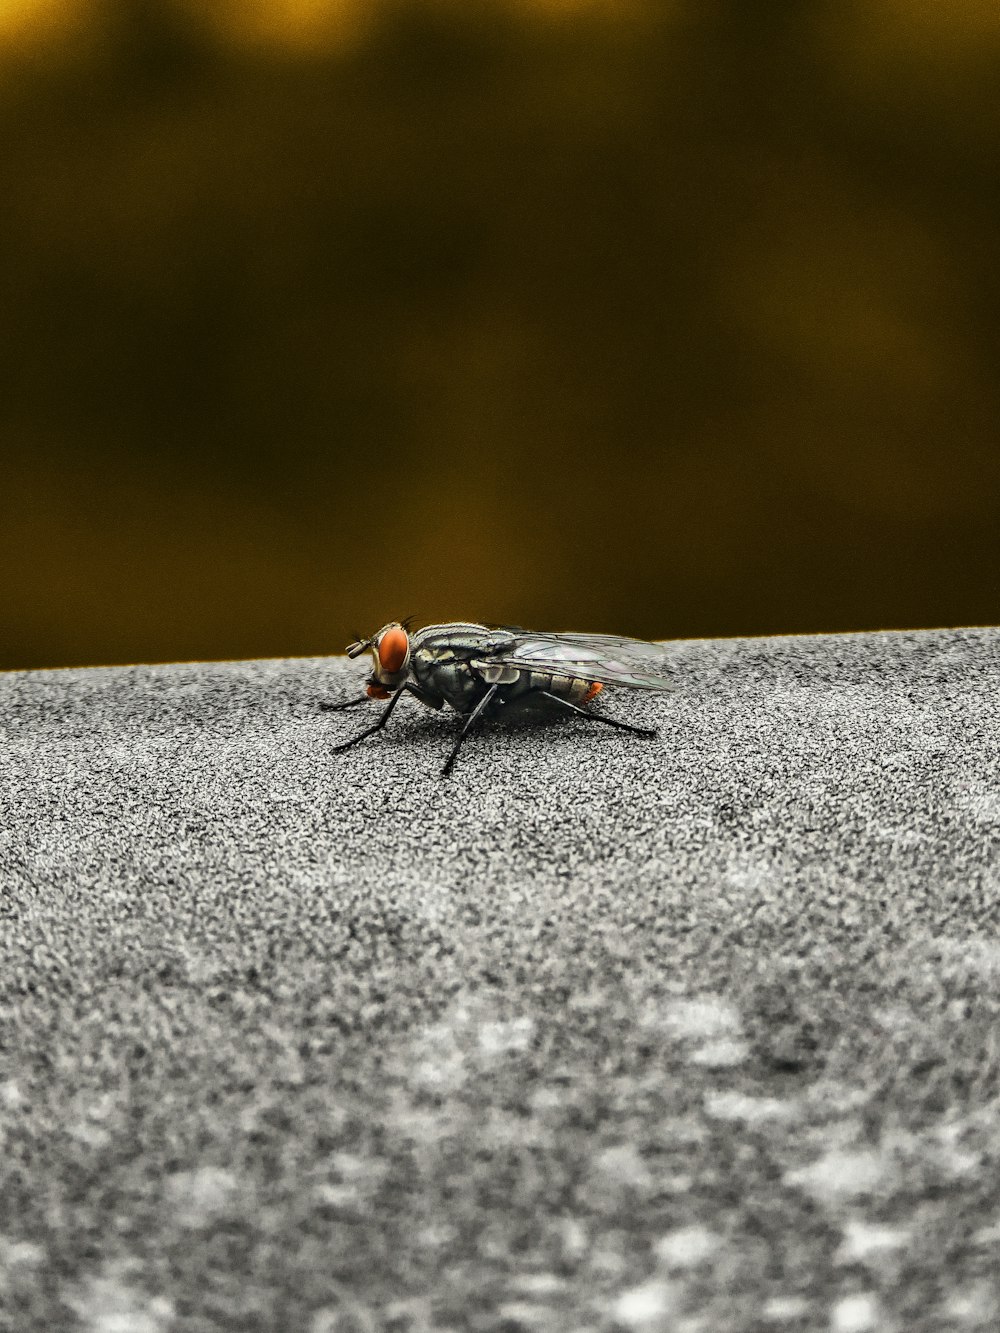 Schwarze Fliege auf grauer Betonoberfläche in Nahaufnahmen tagsüber